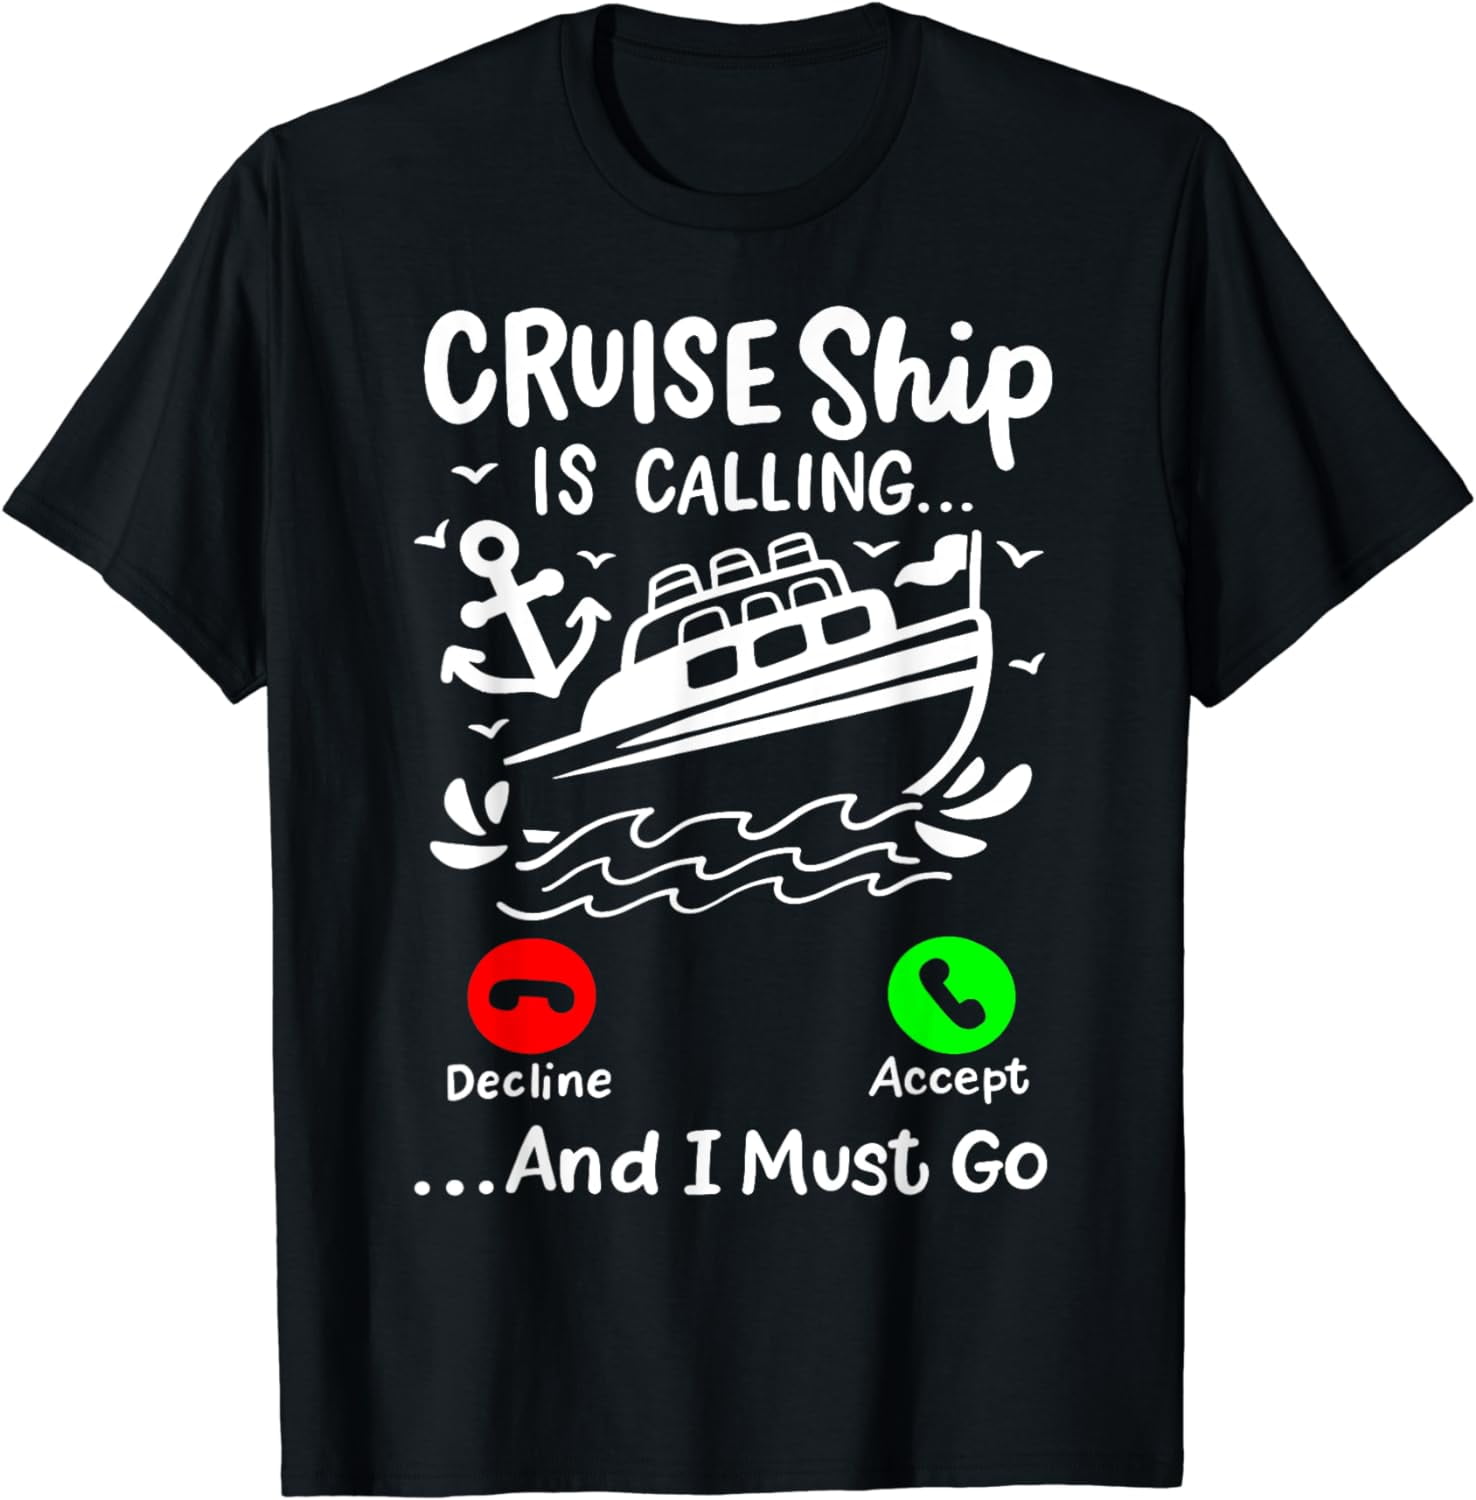 Cruise Ship is Calling T-Shirt - Walmart.com